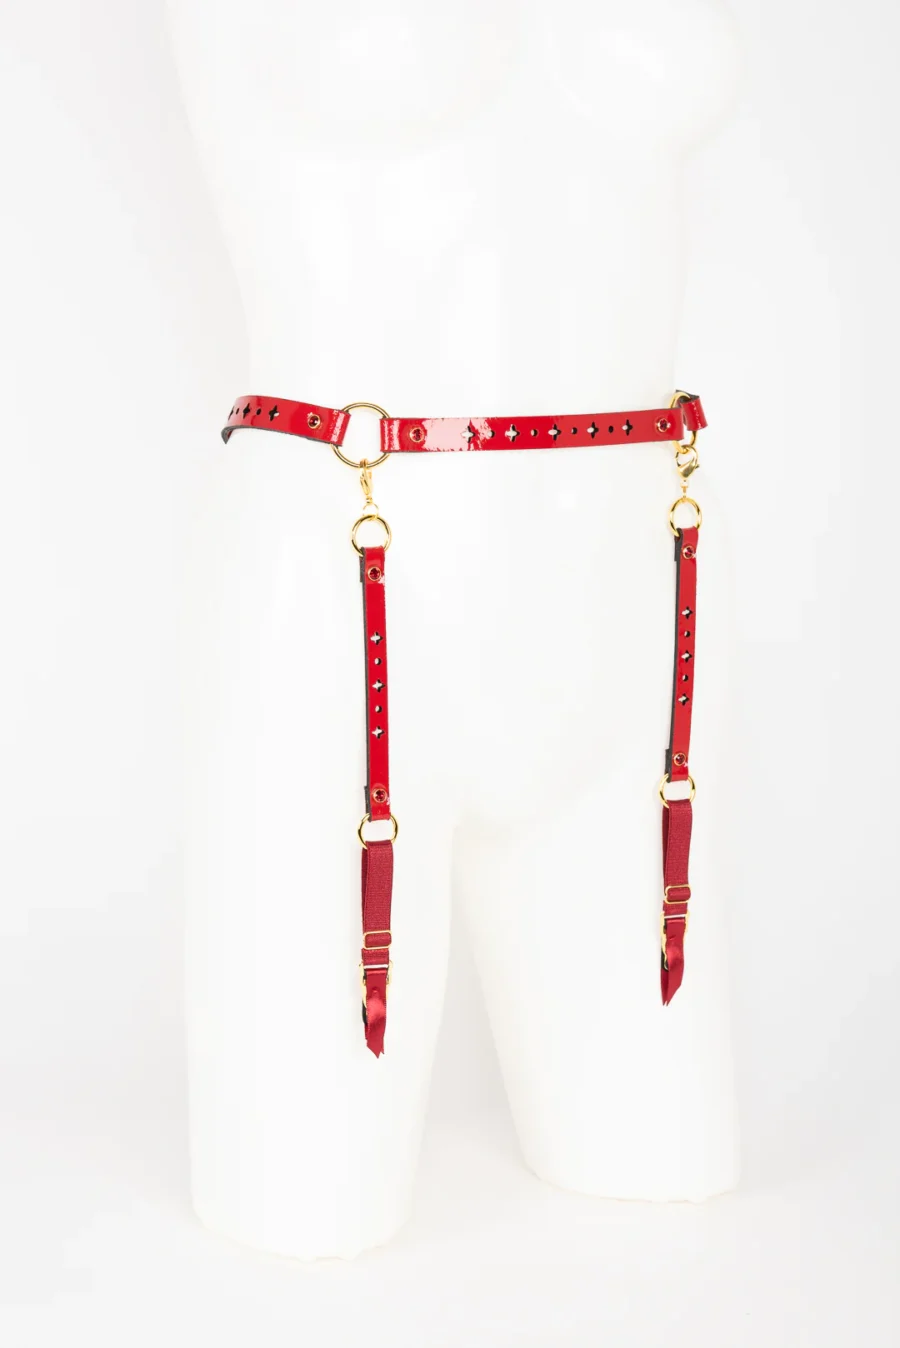 Fraulein Kink Rosso Bianco Nero Waist Suspender 7